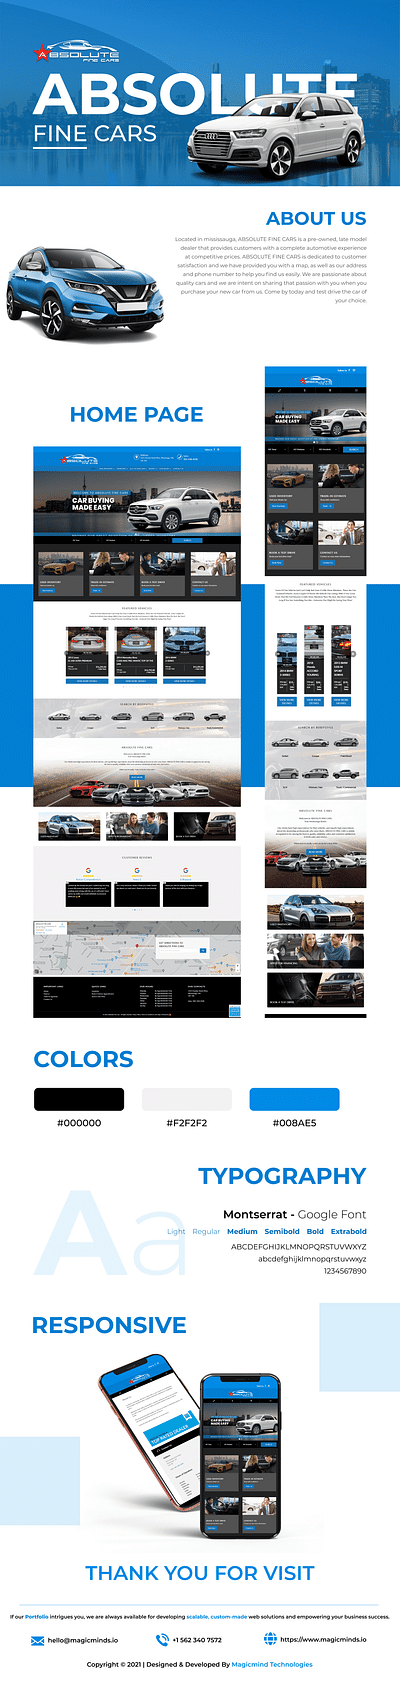 ABSOLUTE FINE CARS - Creación de Sitios Web